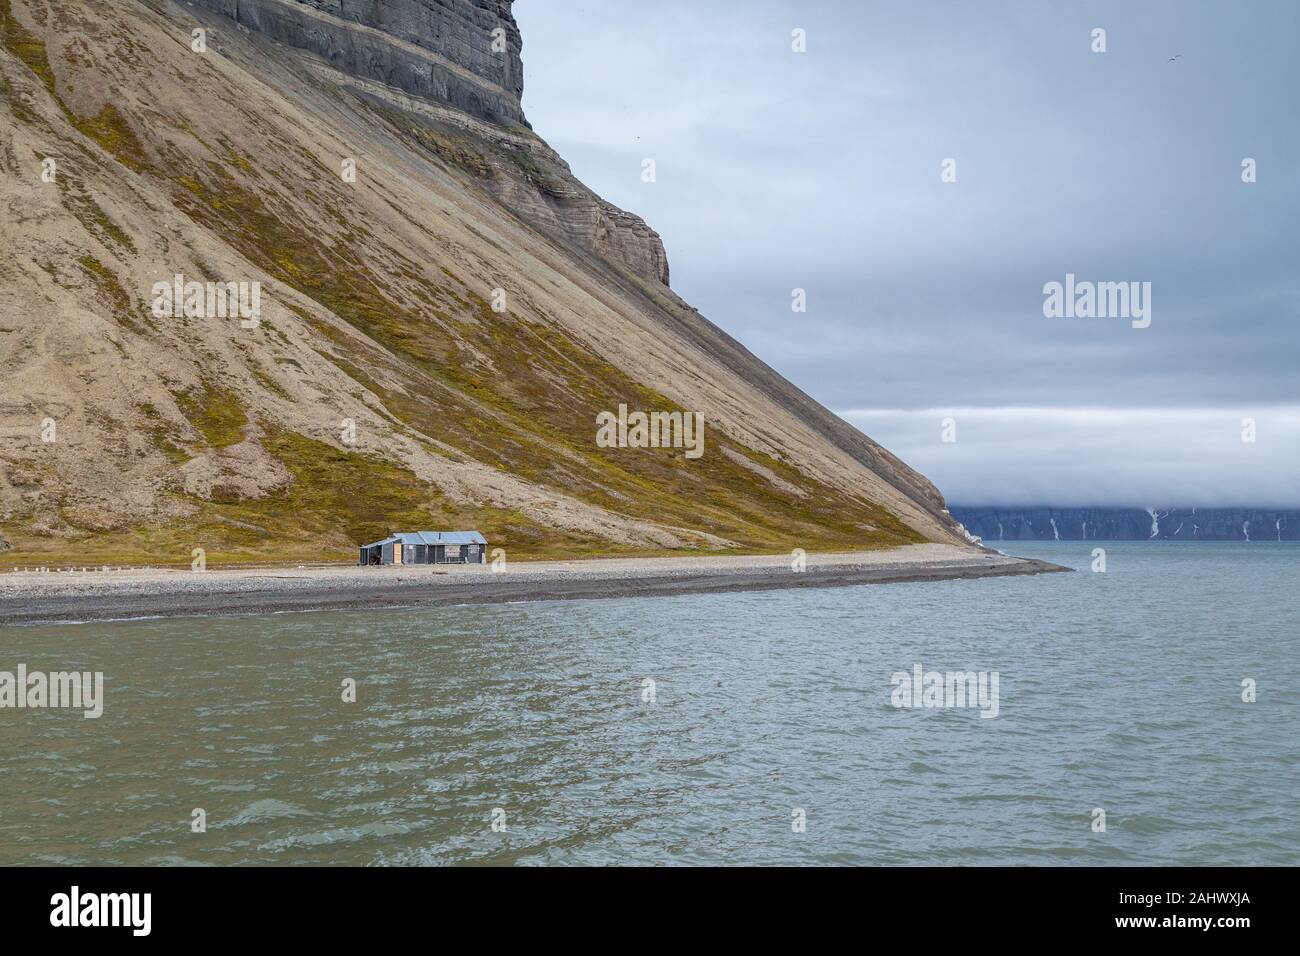 Bâtiment abandonné prises à partir de l'excursion en bateau de Longyearbyen à Pyramiden sur l'île de Spitzberg, Svalbard, dans l'Arctique Banque D'Images